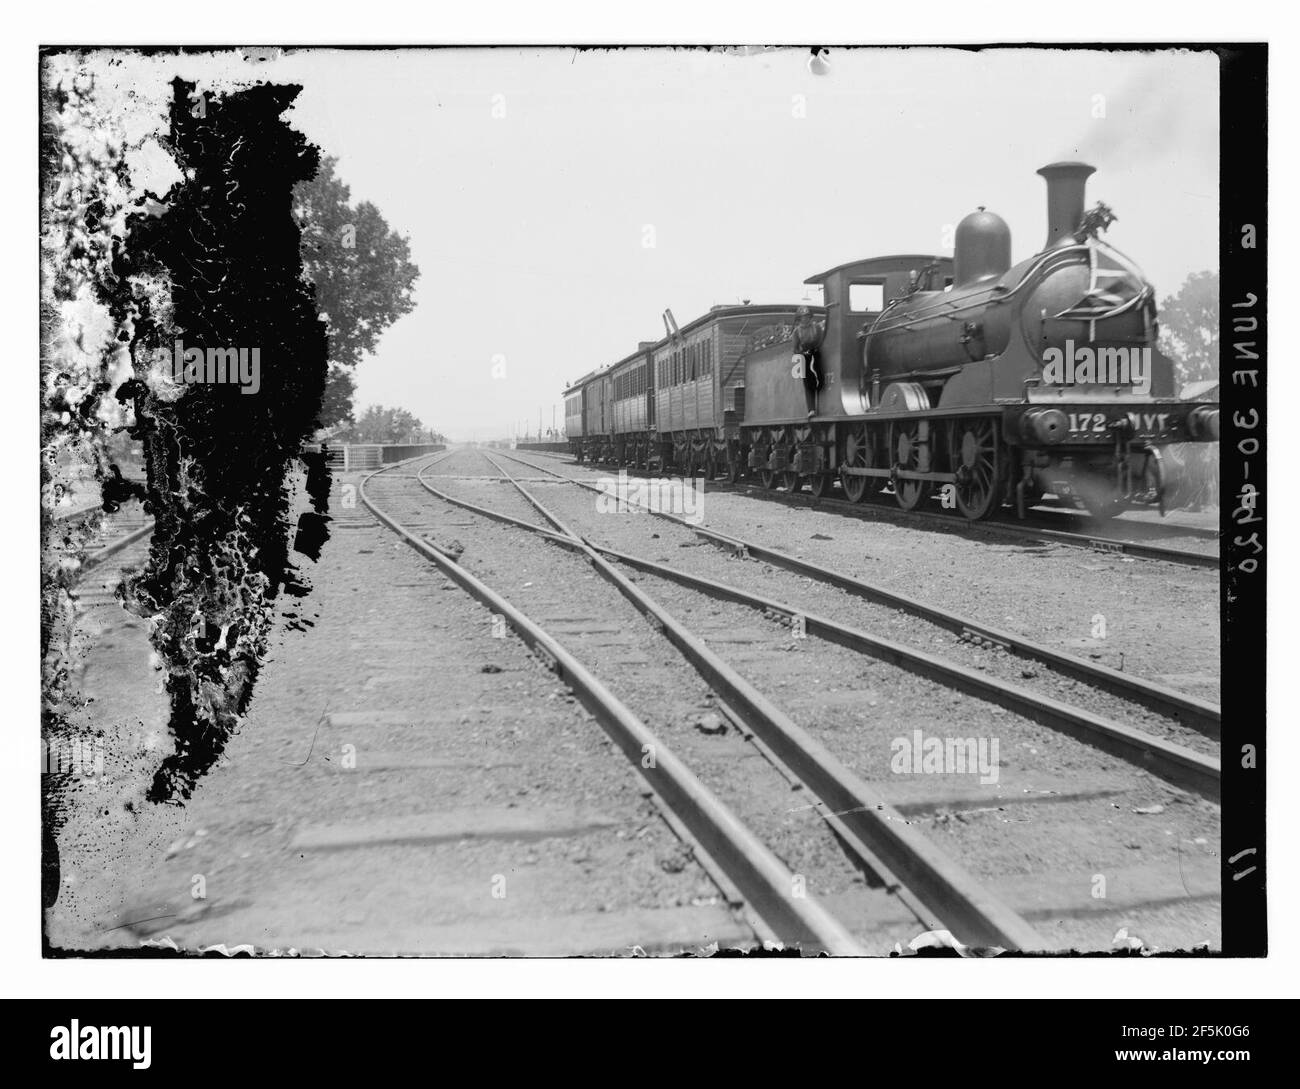 R.R. (i.e., railroad) train, June 30, 1920 Stock Photo